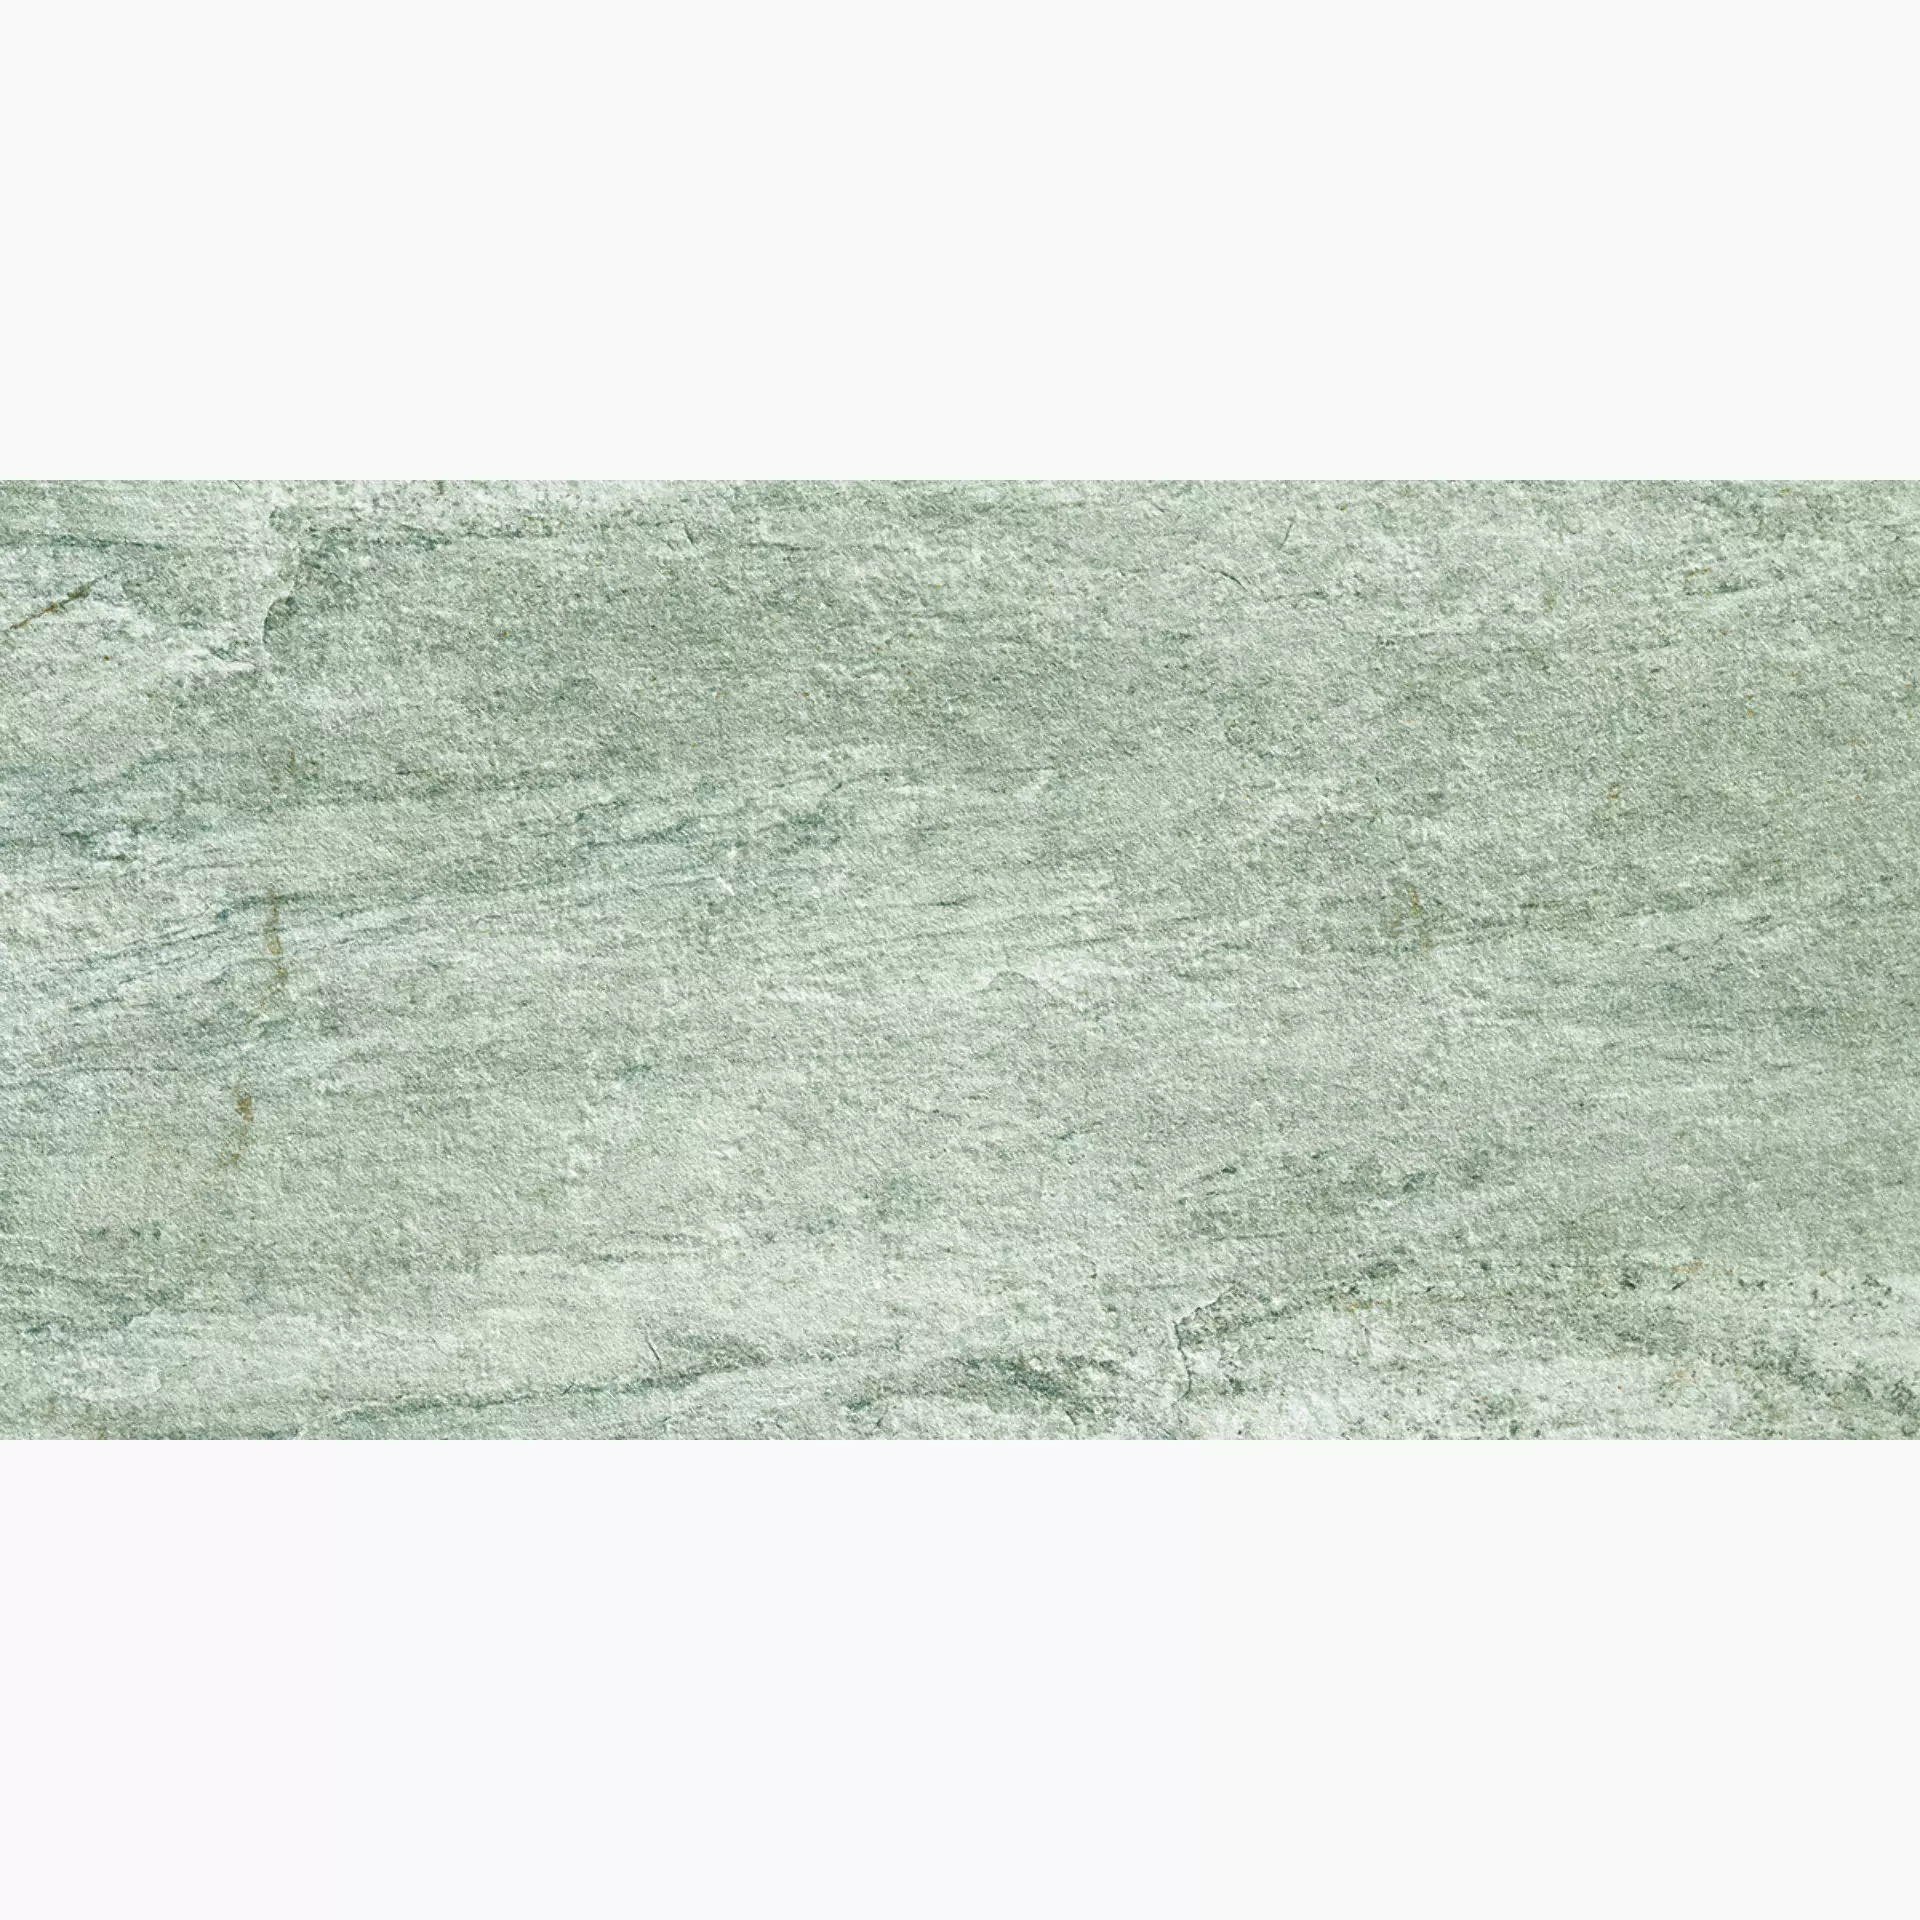 Alfalux Stone Quartz Perla Naturale 8201011 60x120cm rektifiziert 9mm